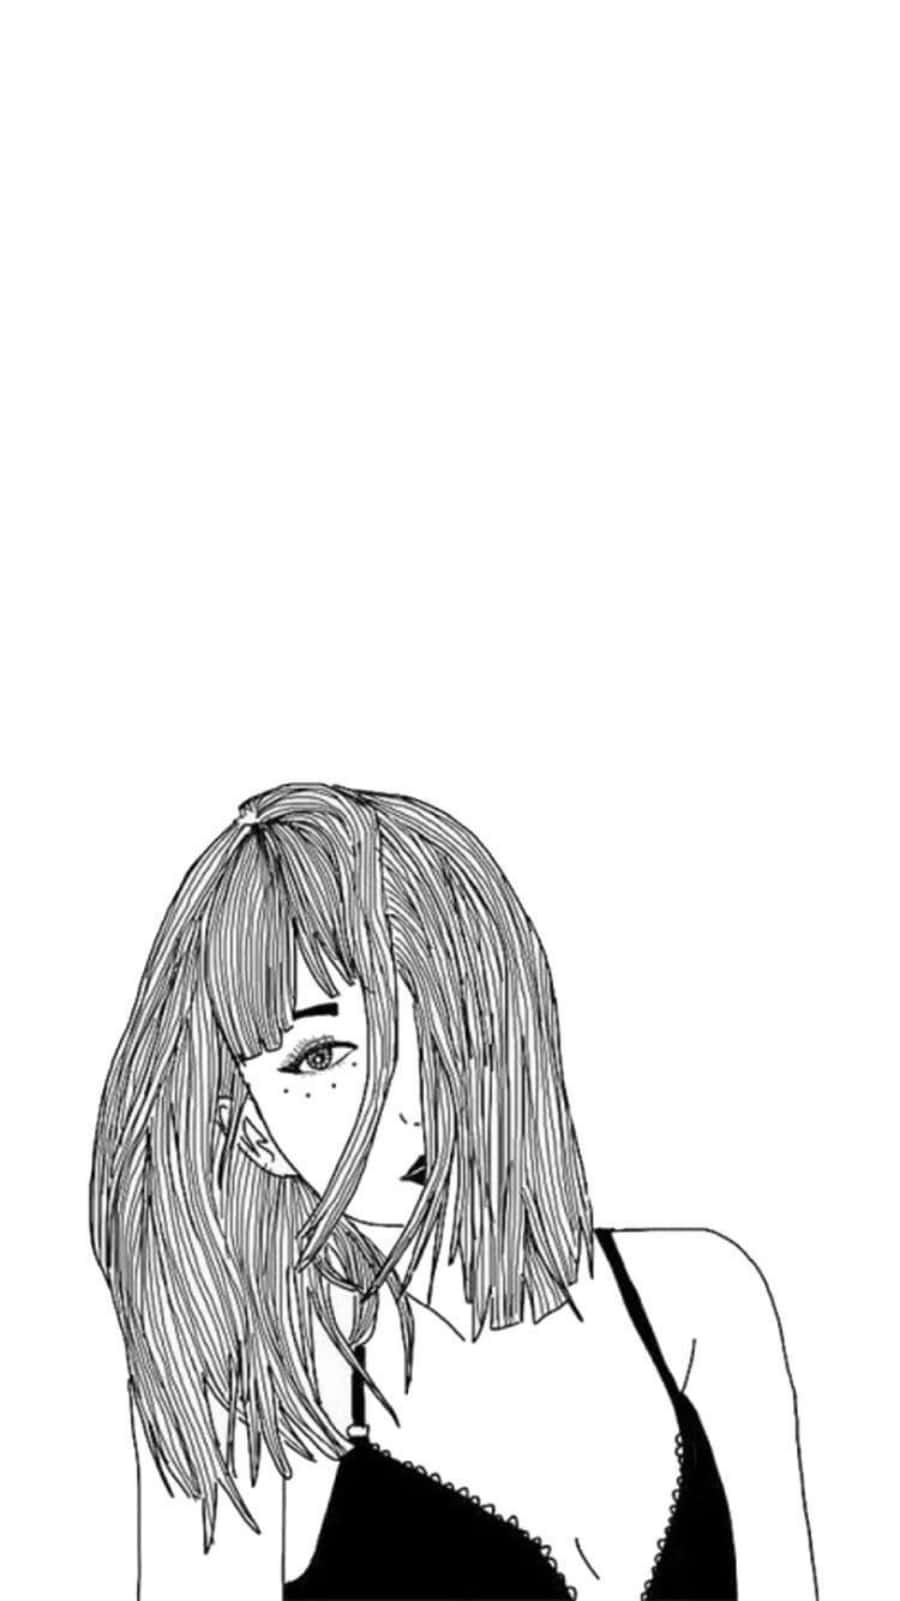 Eineschwarz-weiß-zeichnung Einer Frau Mit Langen Haaren